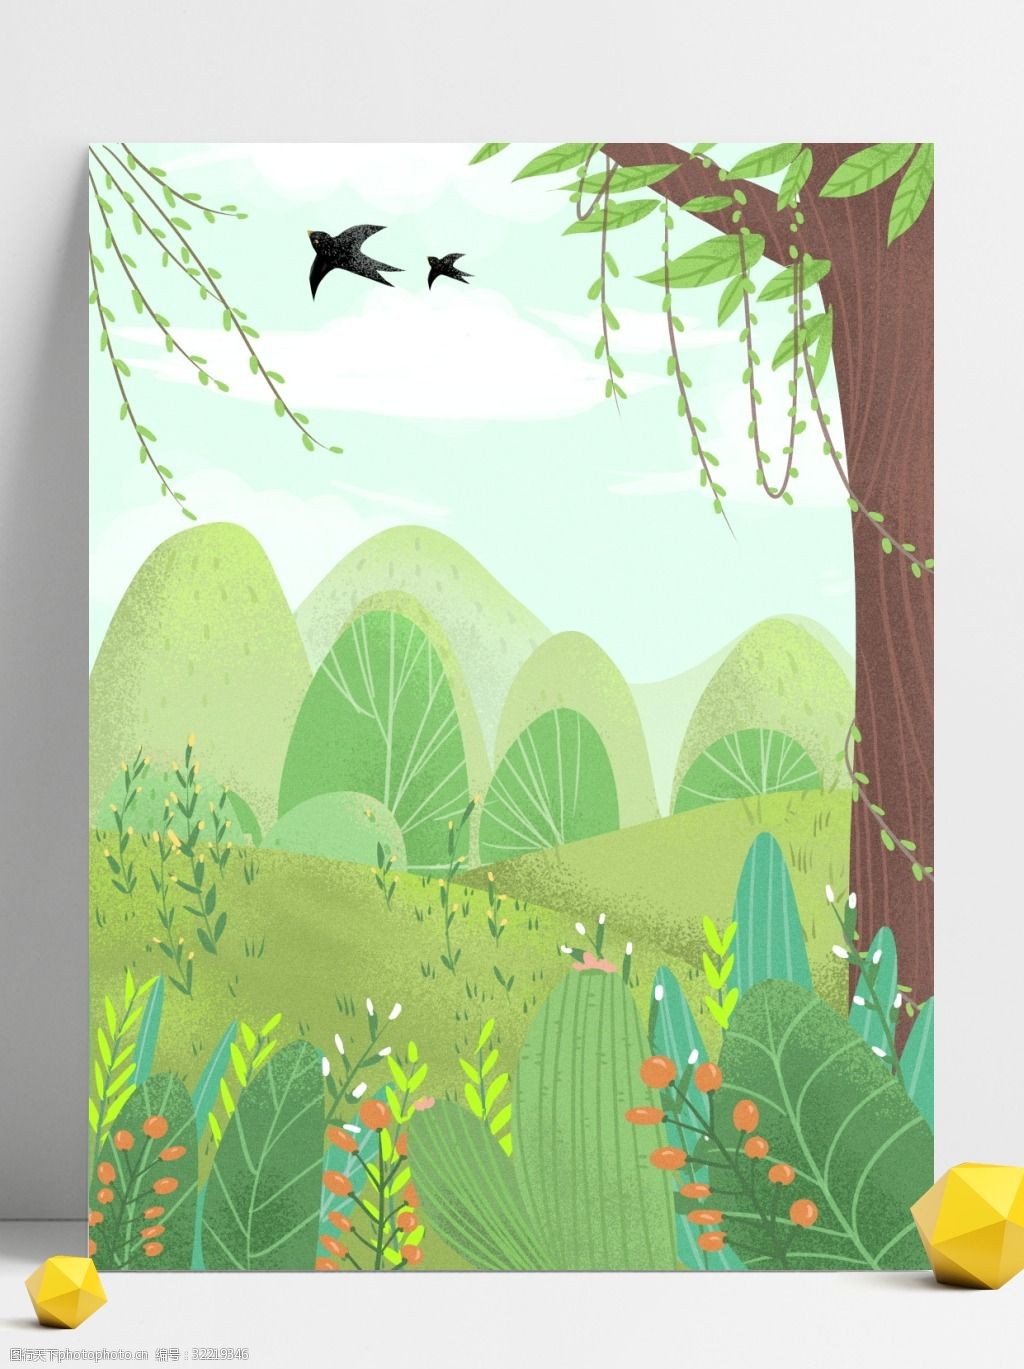 树叶背景 绿色背景 治愈系背景 插画背景 植物背景 柳叶 燕子